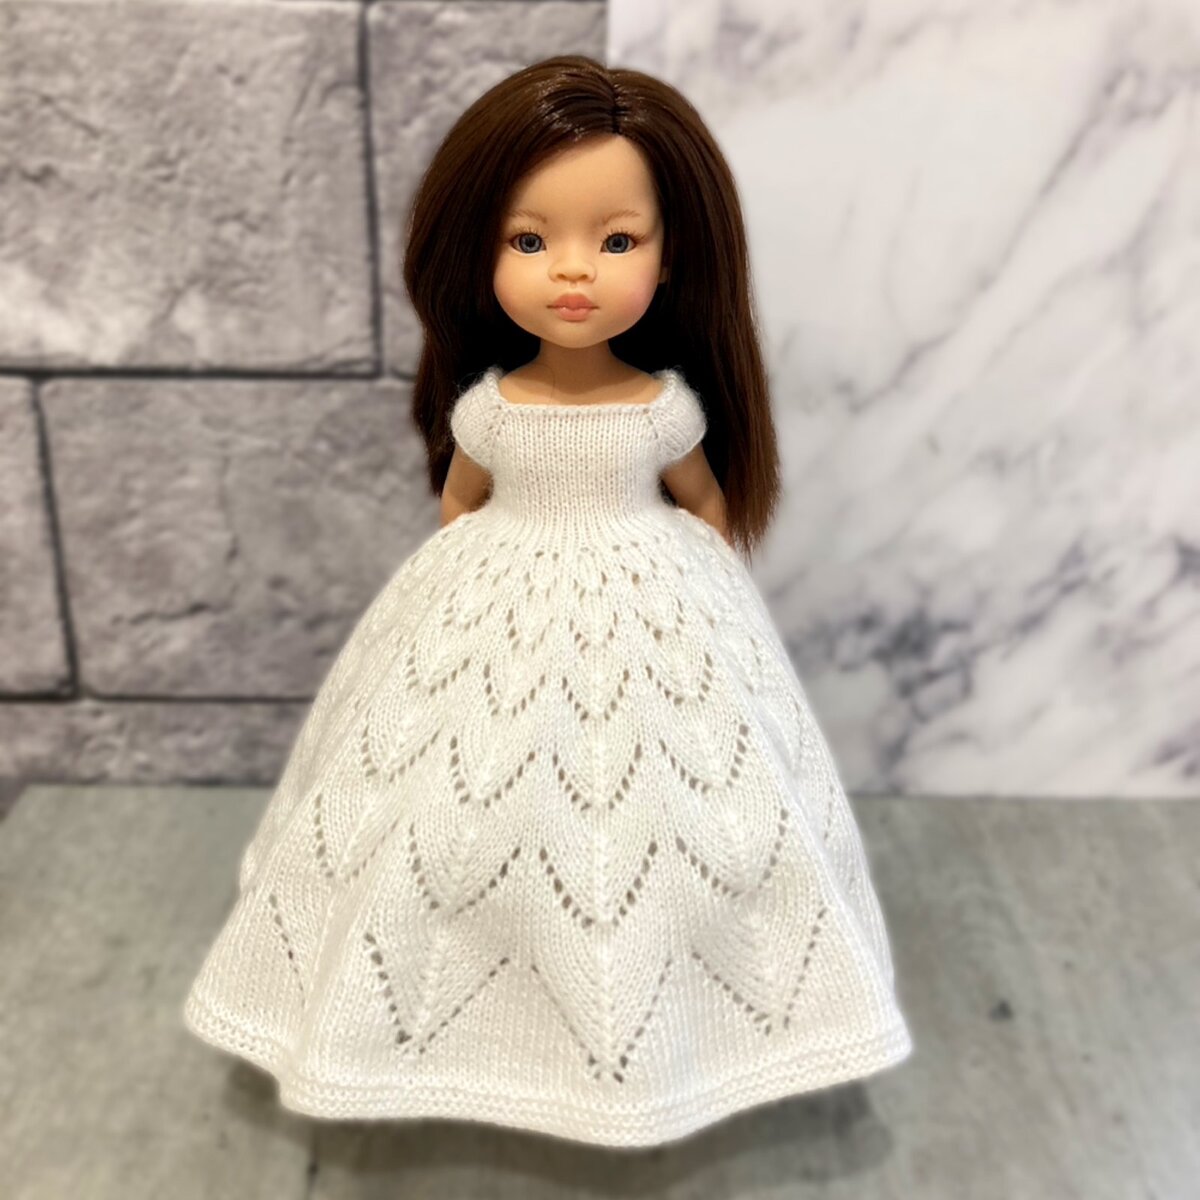 Как сшить и связать простое платье для куклы Паола Рейна